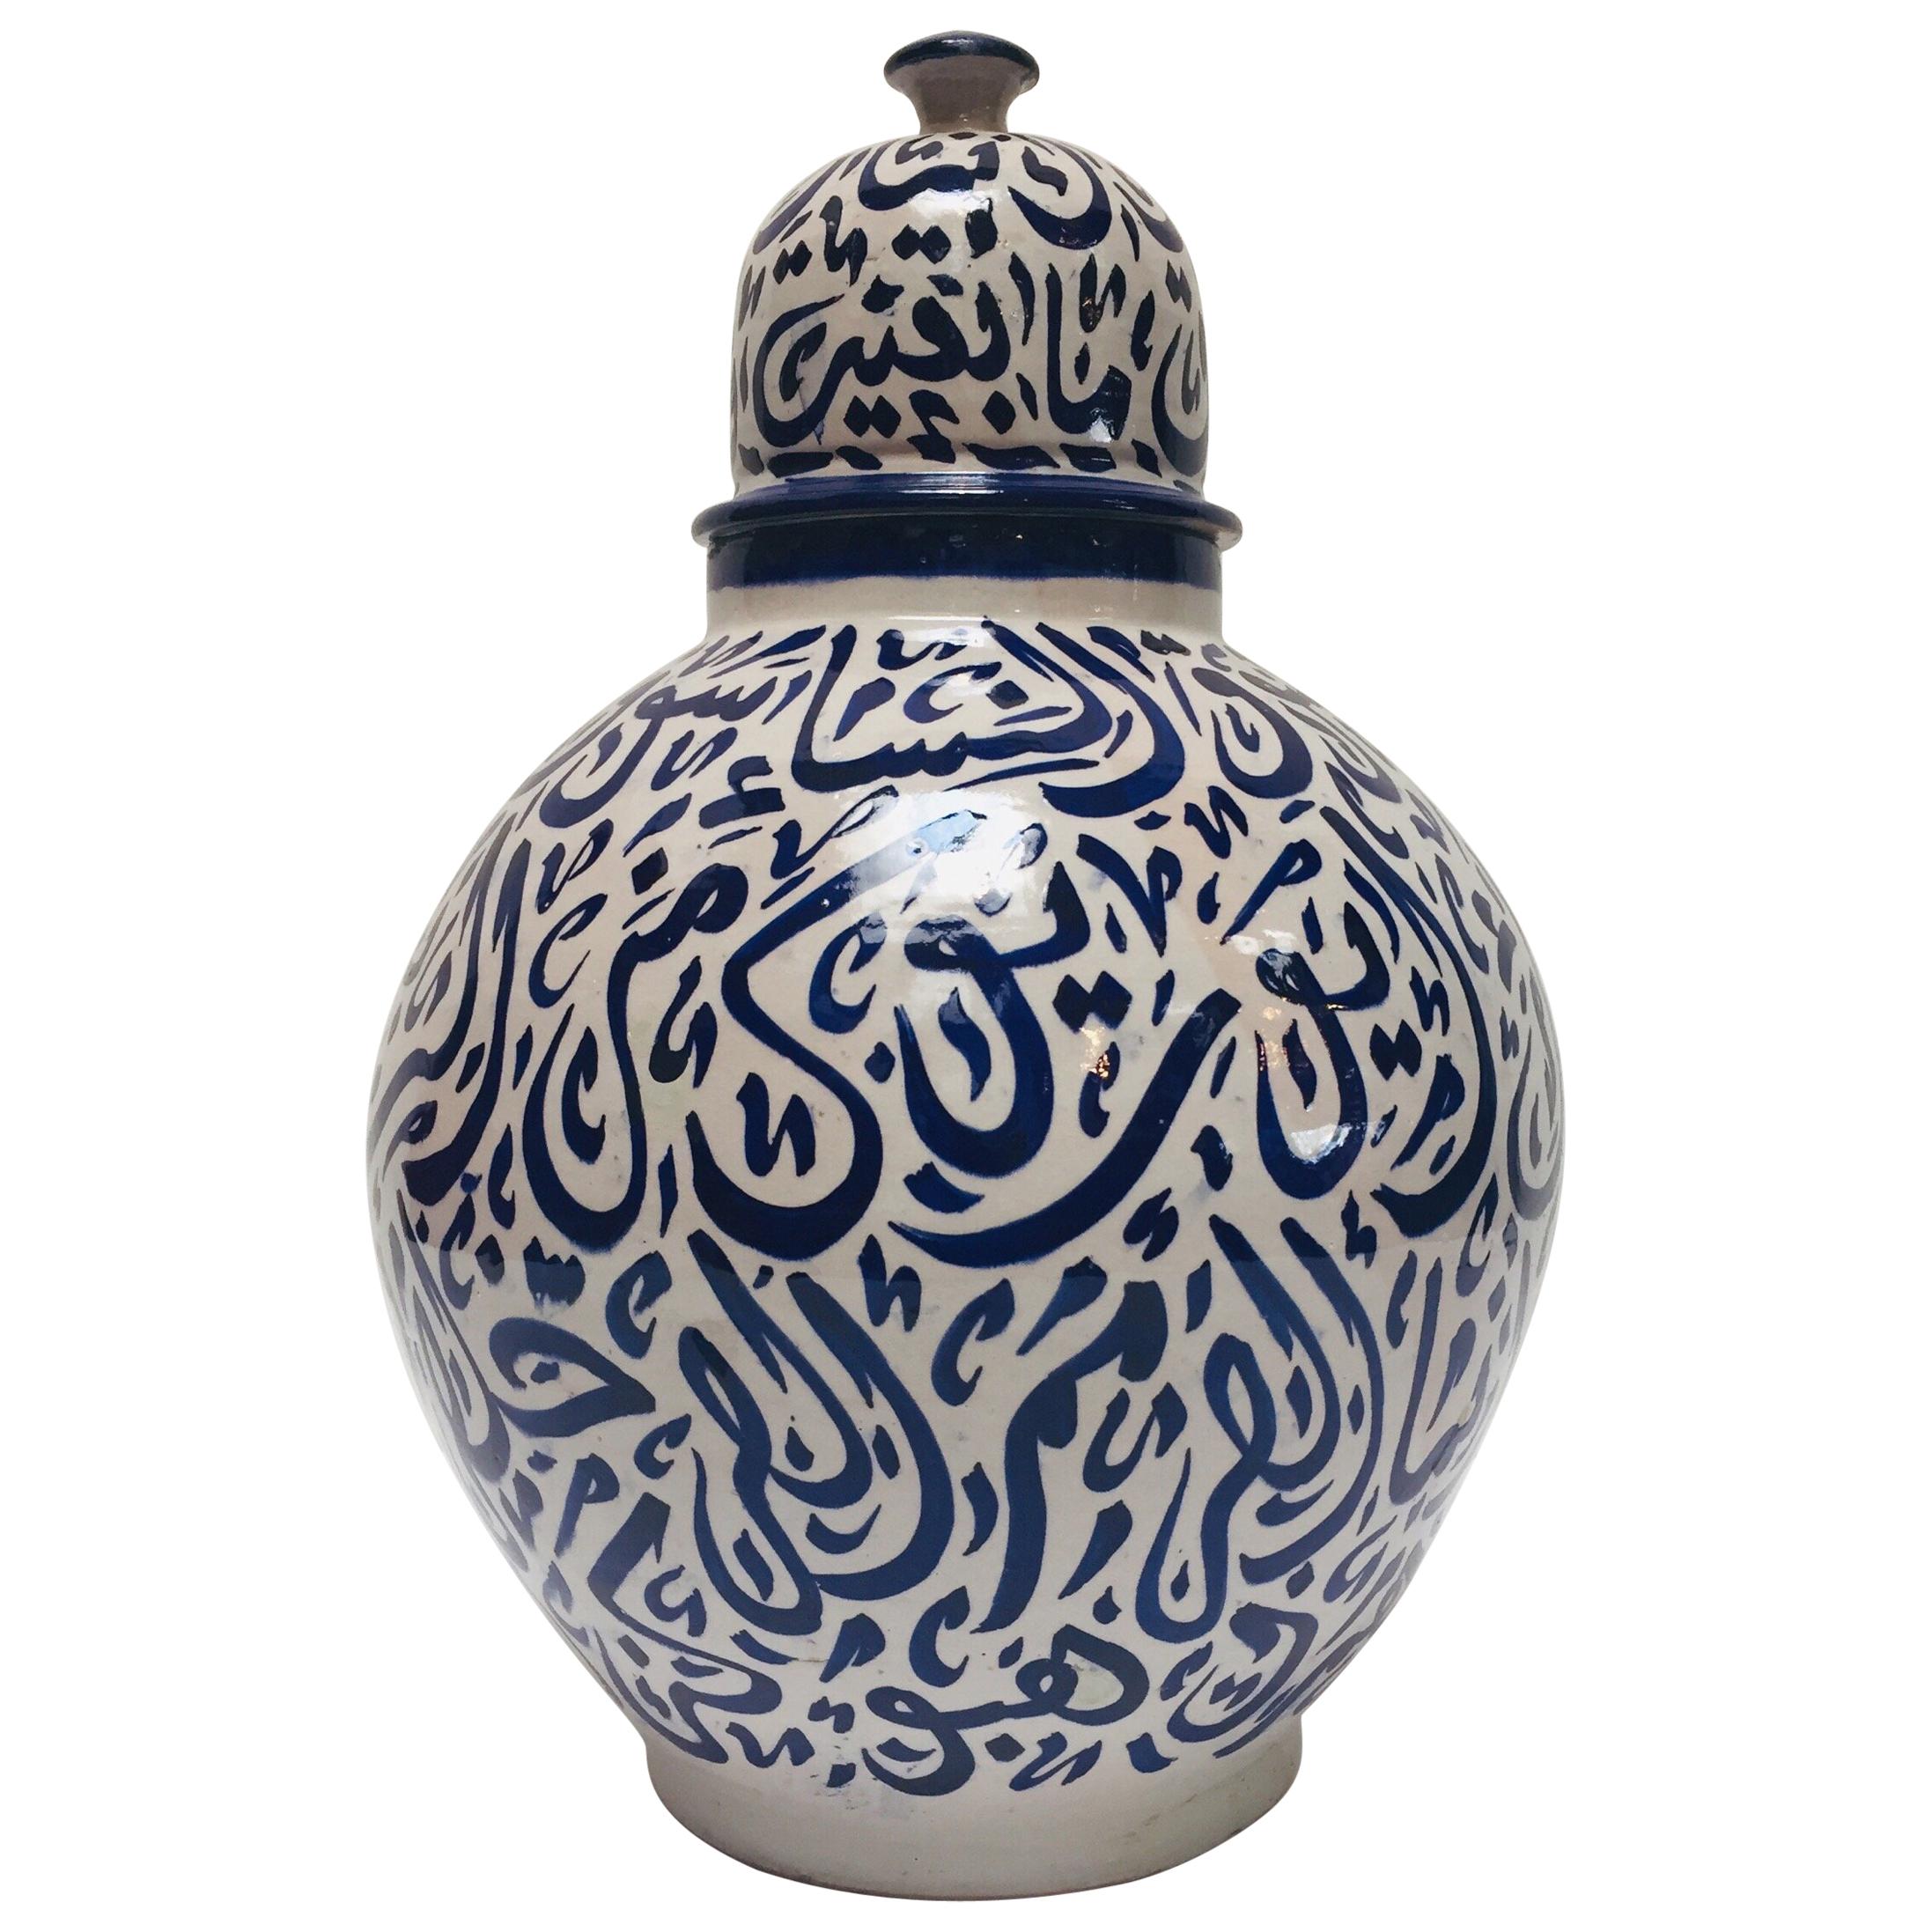 Marokkanische blaue Keramik-Urne mit Deckel und arabischer Kalligrafie, Fez